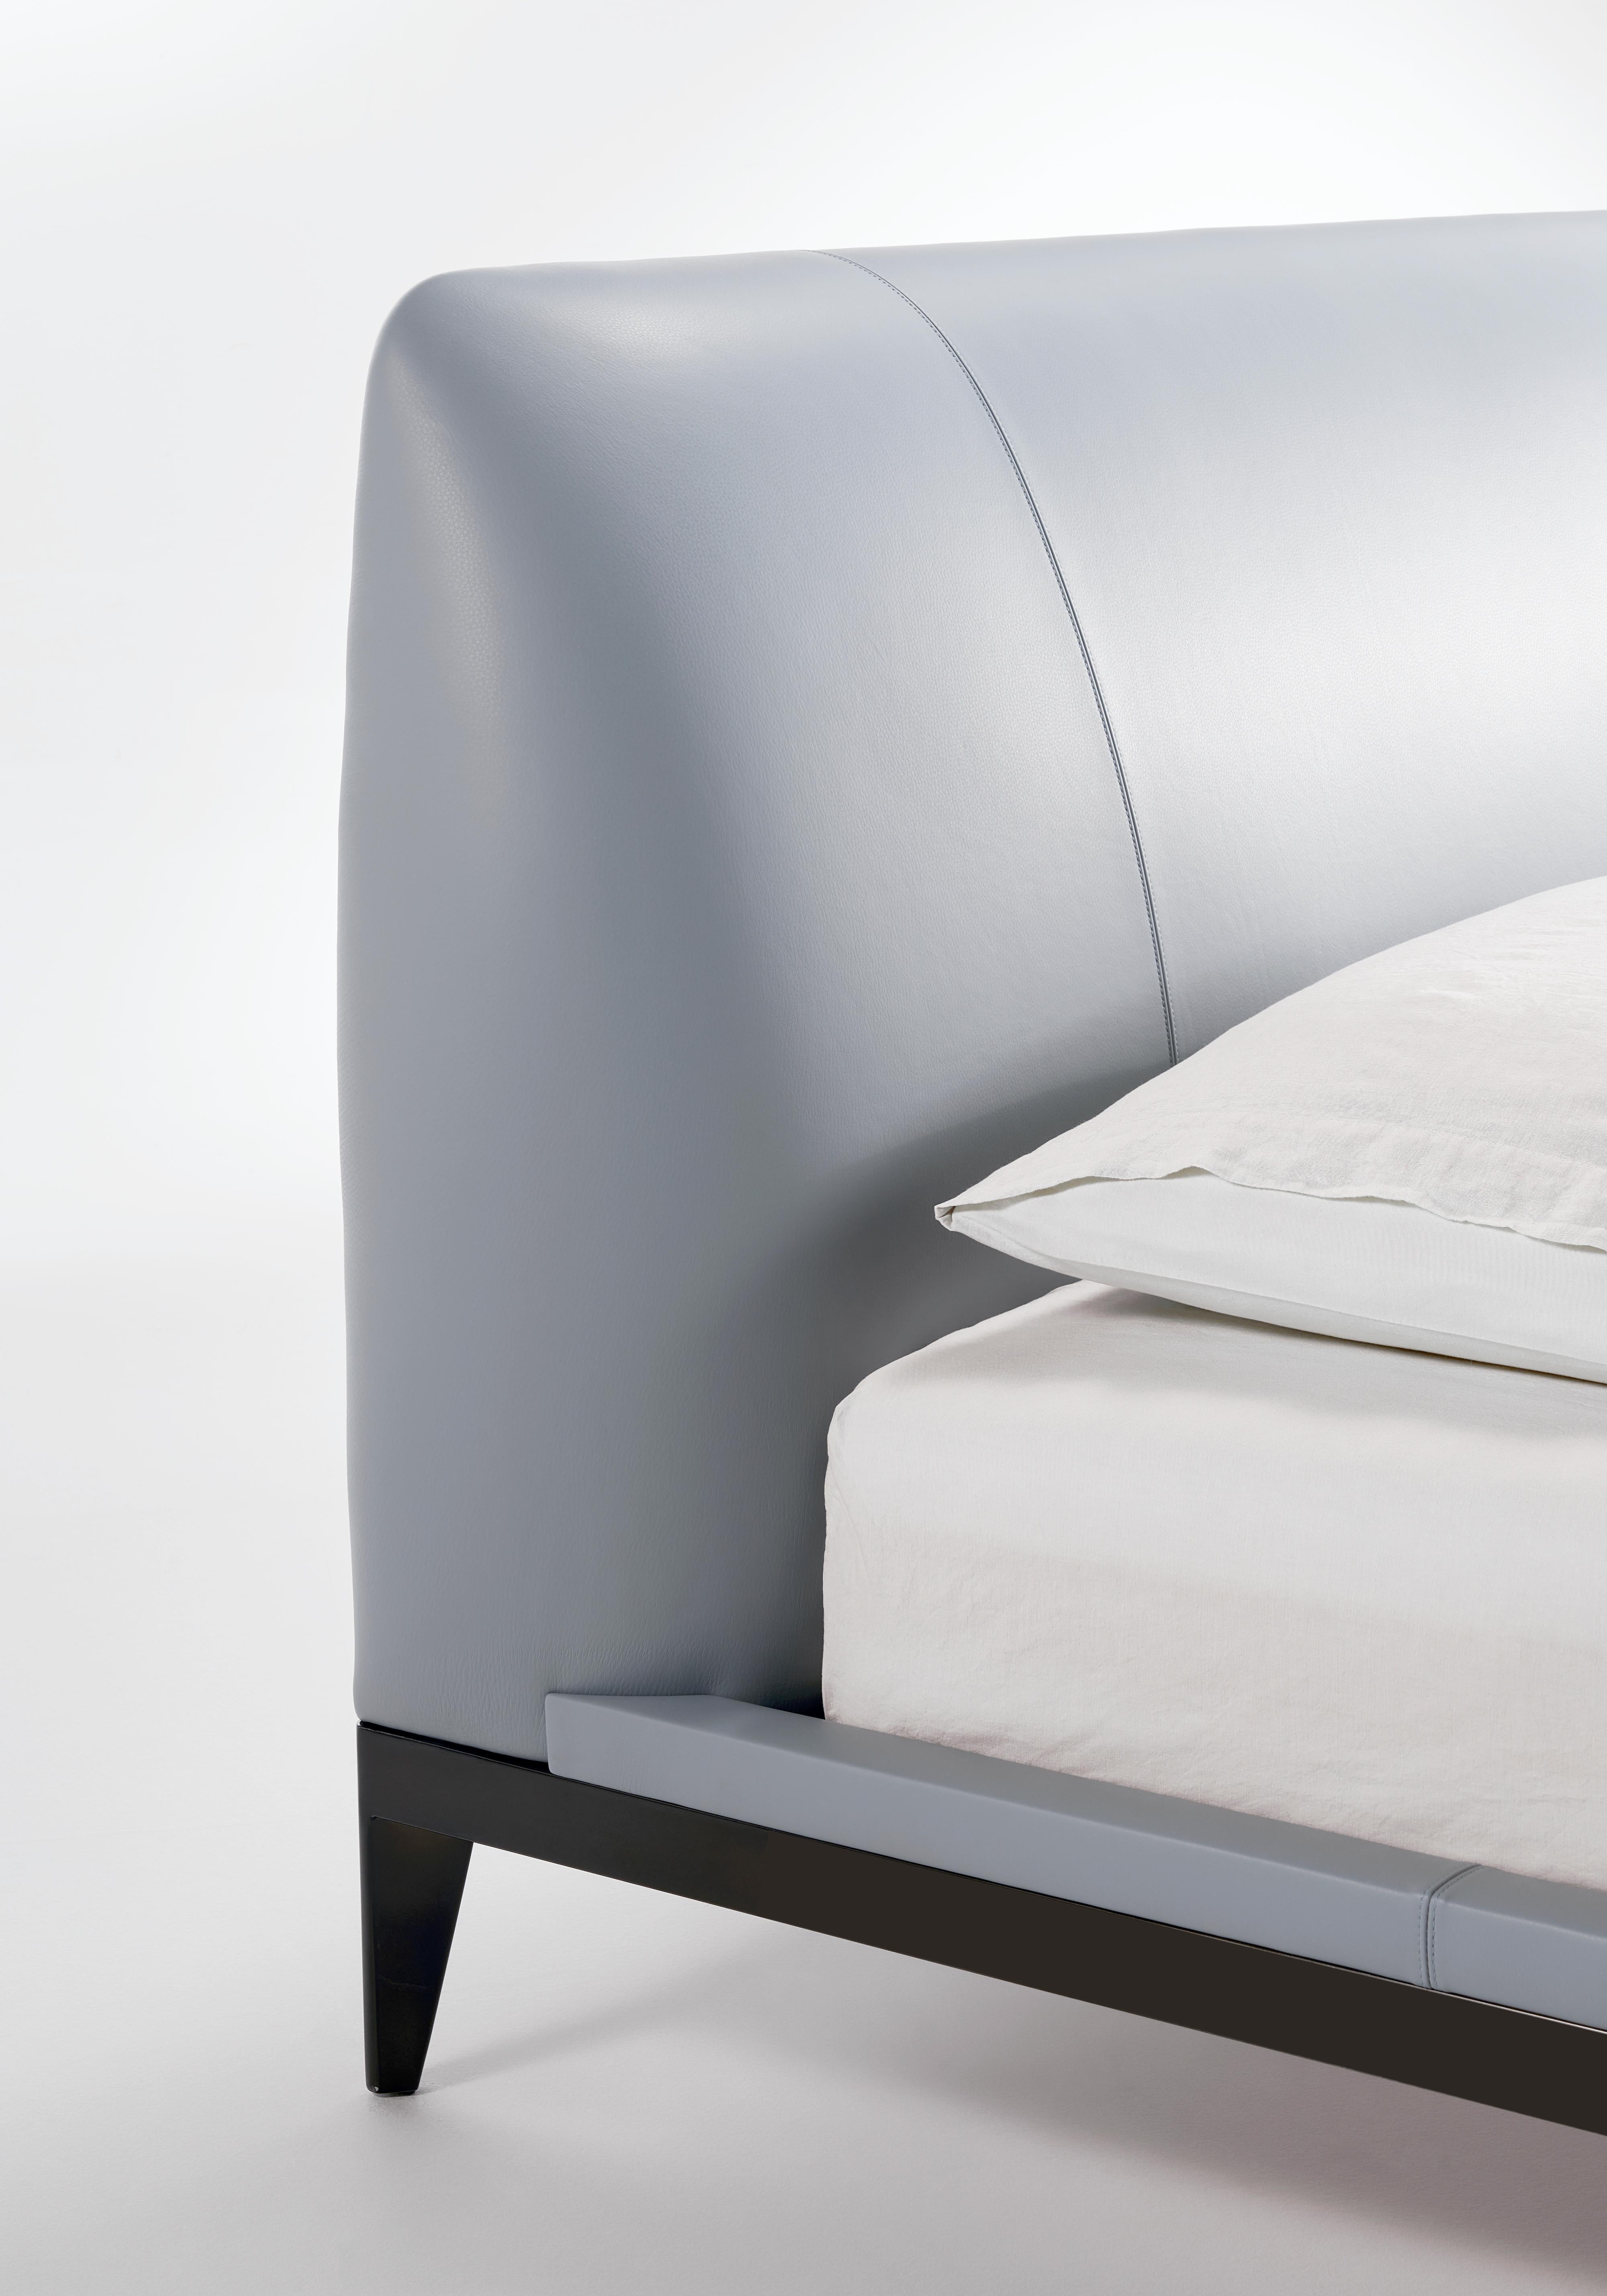 Conçu par le designer brésilien Ricardo Antonio, le lit Adesso présente des formes essentielles, rendues attrayantes par la structure métallique qui leur confère dynamisme et légèreté. La tête de lit généreusement rembourrée la rend extrêmement